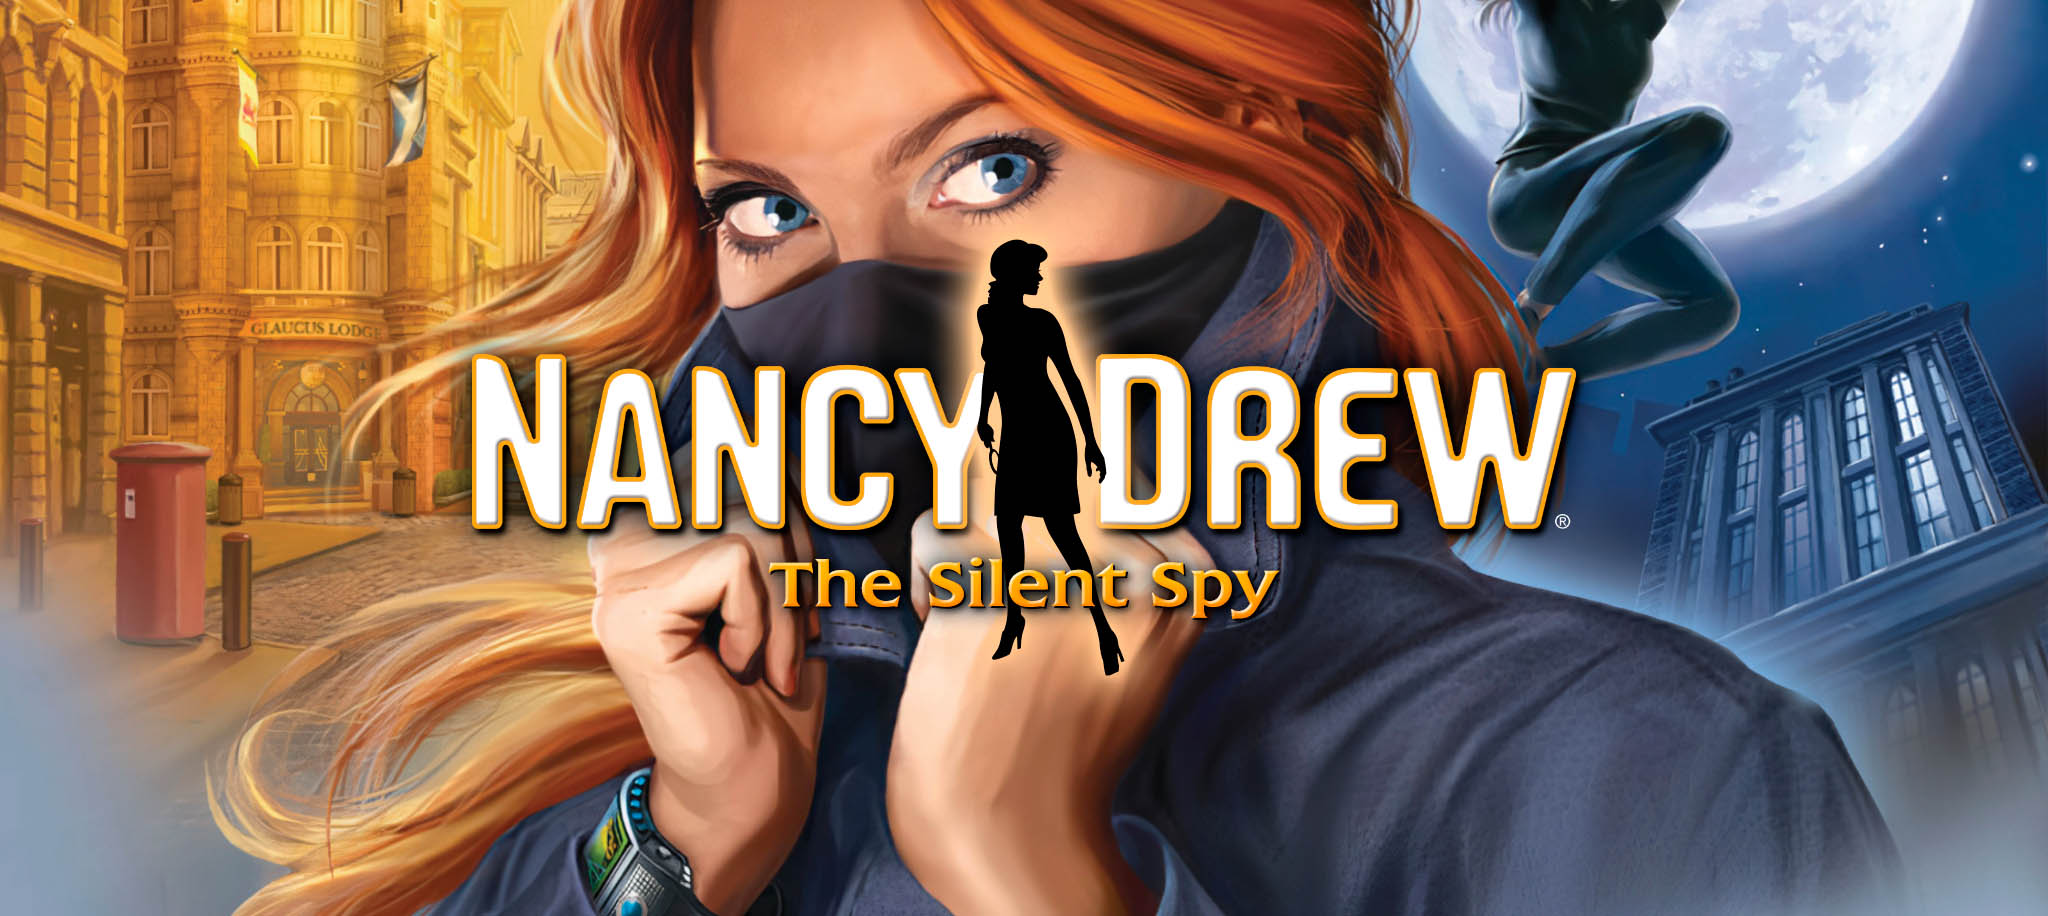 The Silent Spy